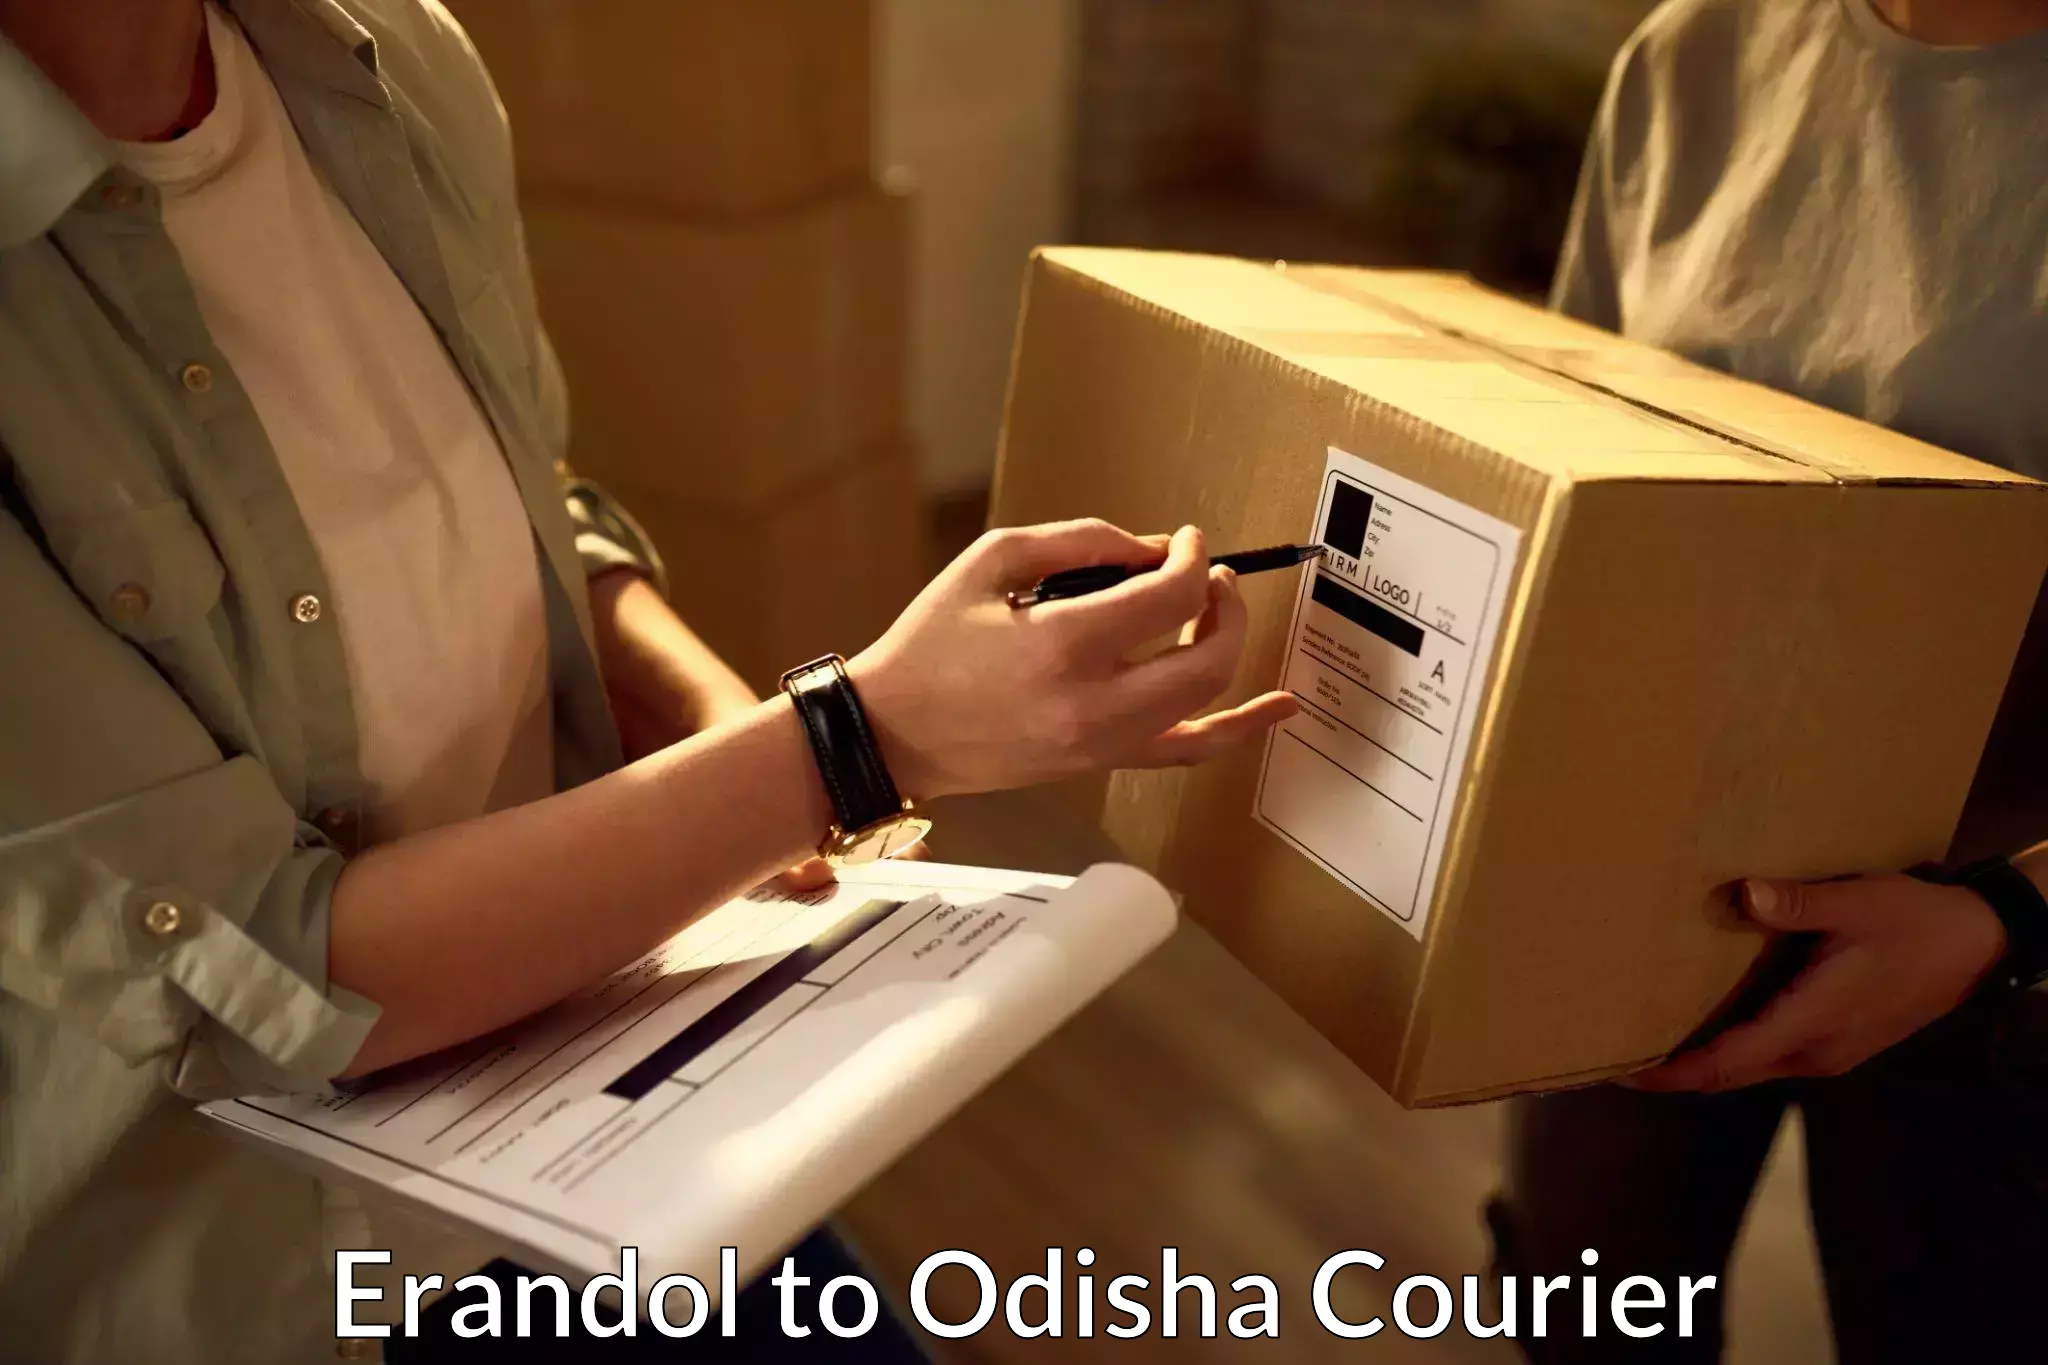 Customer-centric shipping Erandol to Odisha